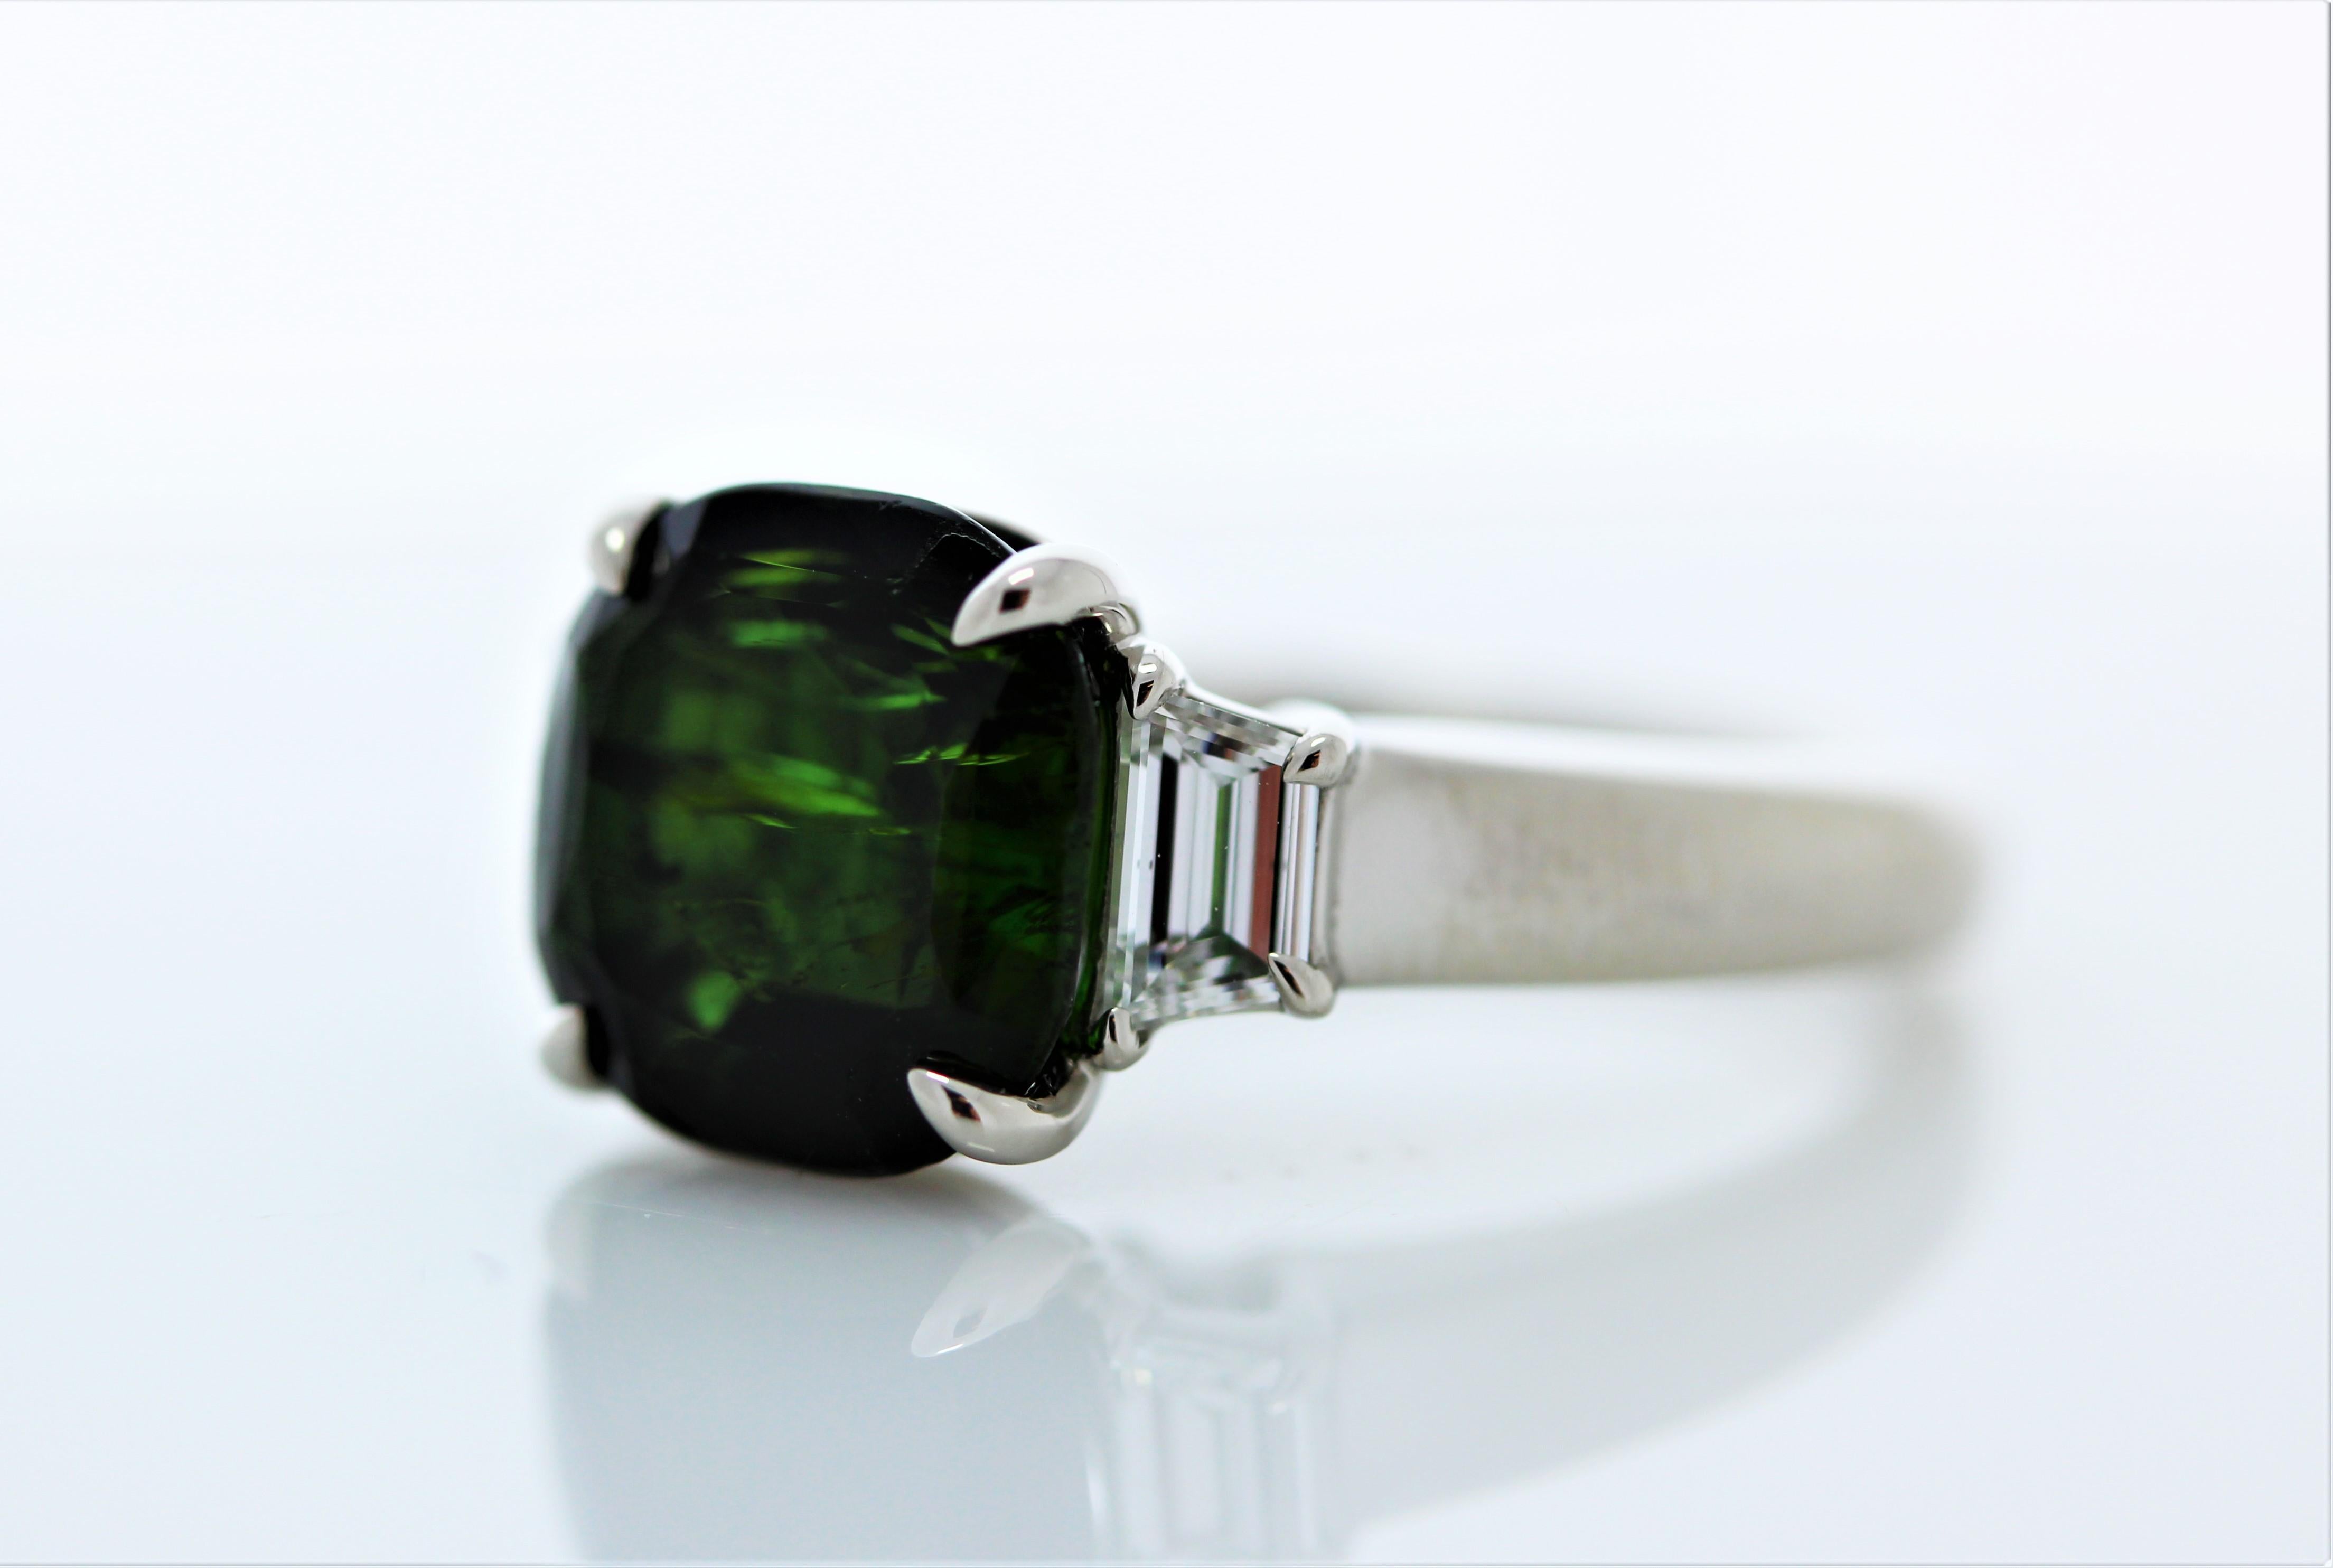 Dieser hinreißende, grün gefärbte Turmalinring ist ein unglaublicher Anblick! Der Ring ist mit einem dynamischen Turmalin von 4,56 Karat besetzt. Zu beiden Seiten des Edelsteins sitzen perfekt aufeinander abgestimmte, trapezförmig geschliffene